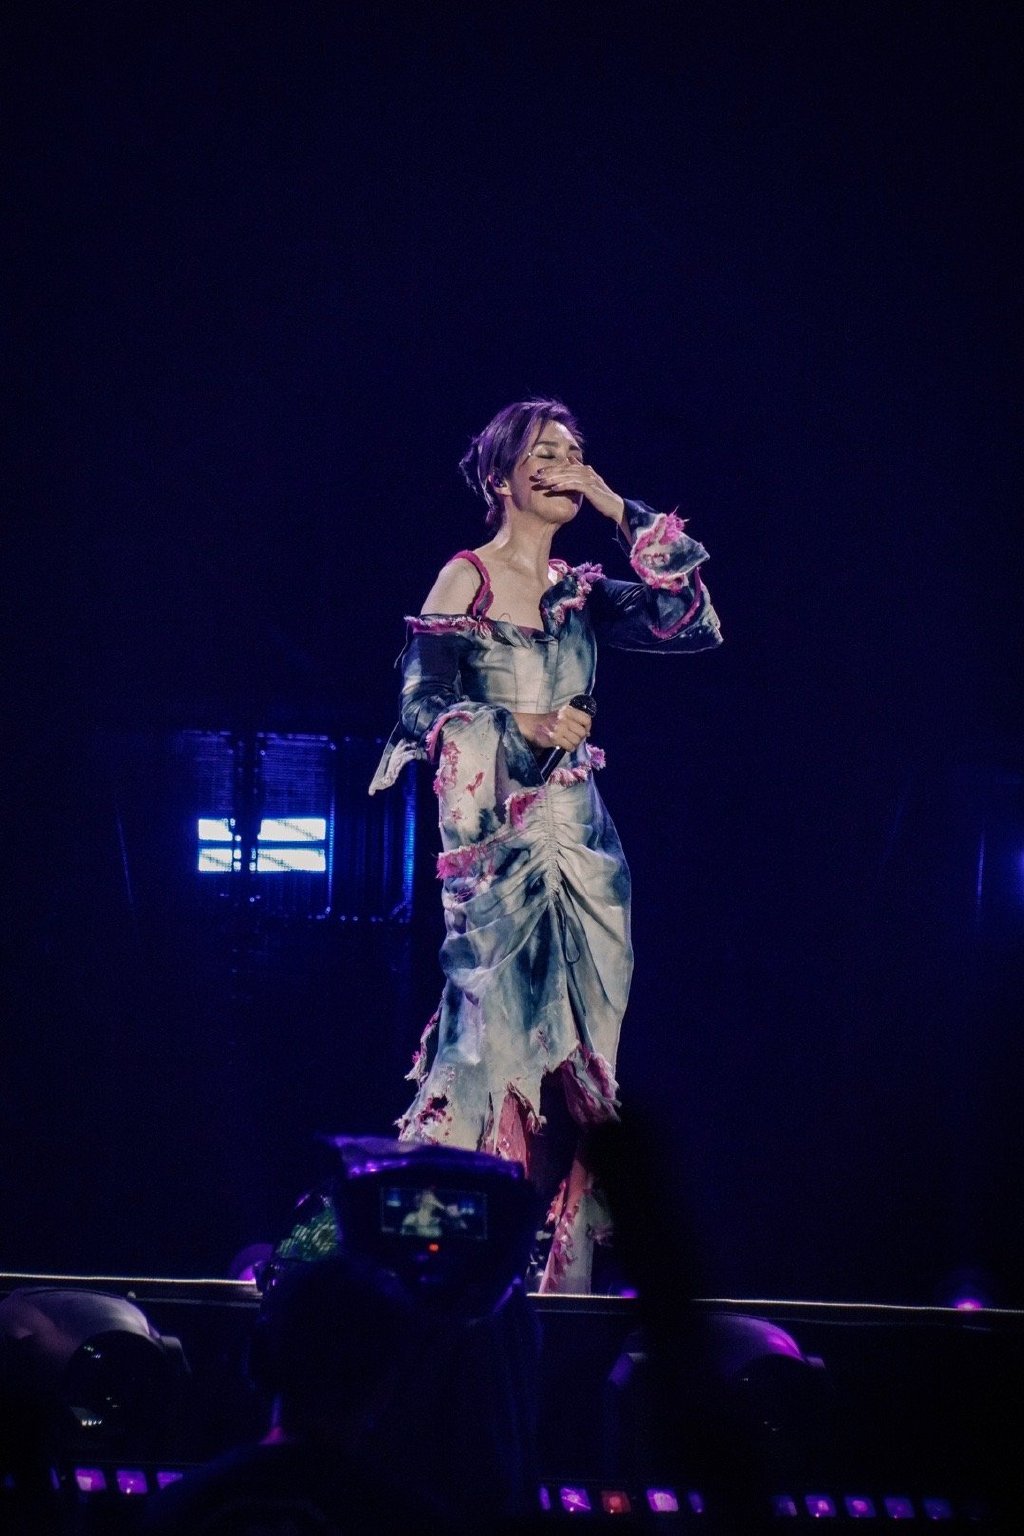 杨千嬅被歌迷的热情感动。